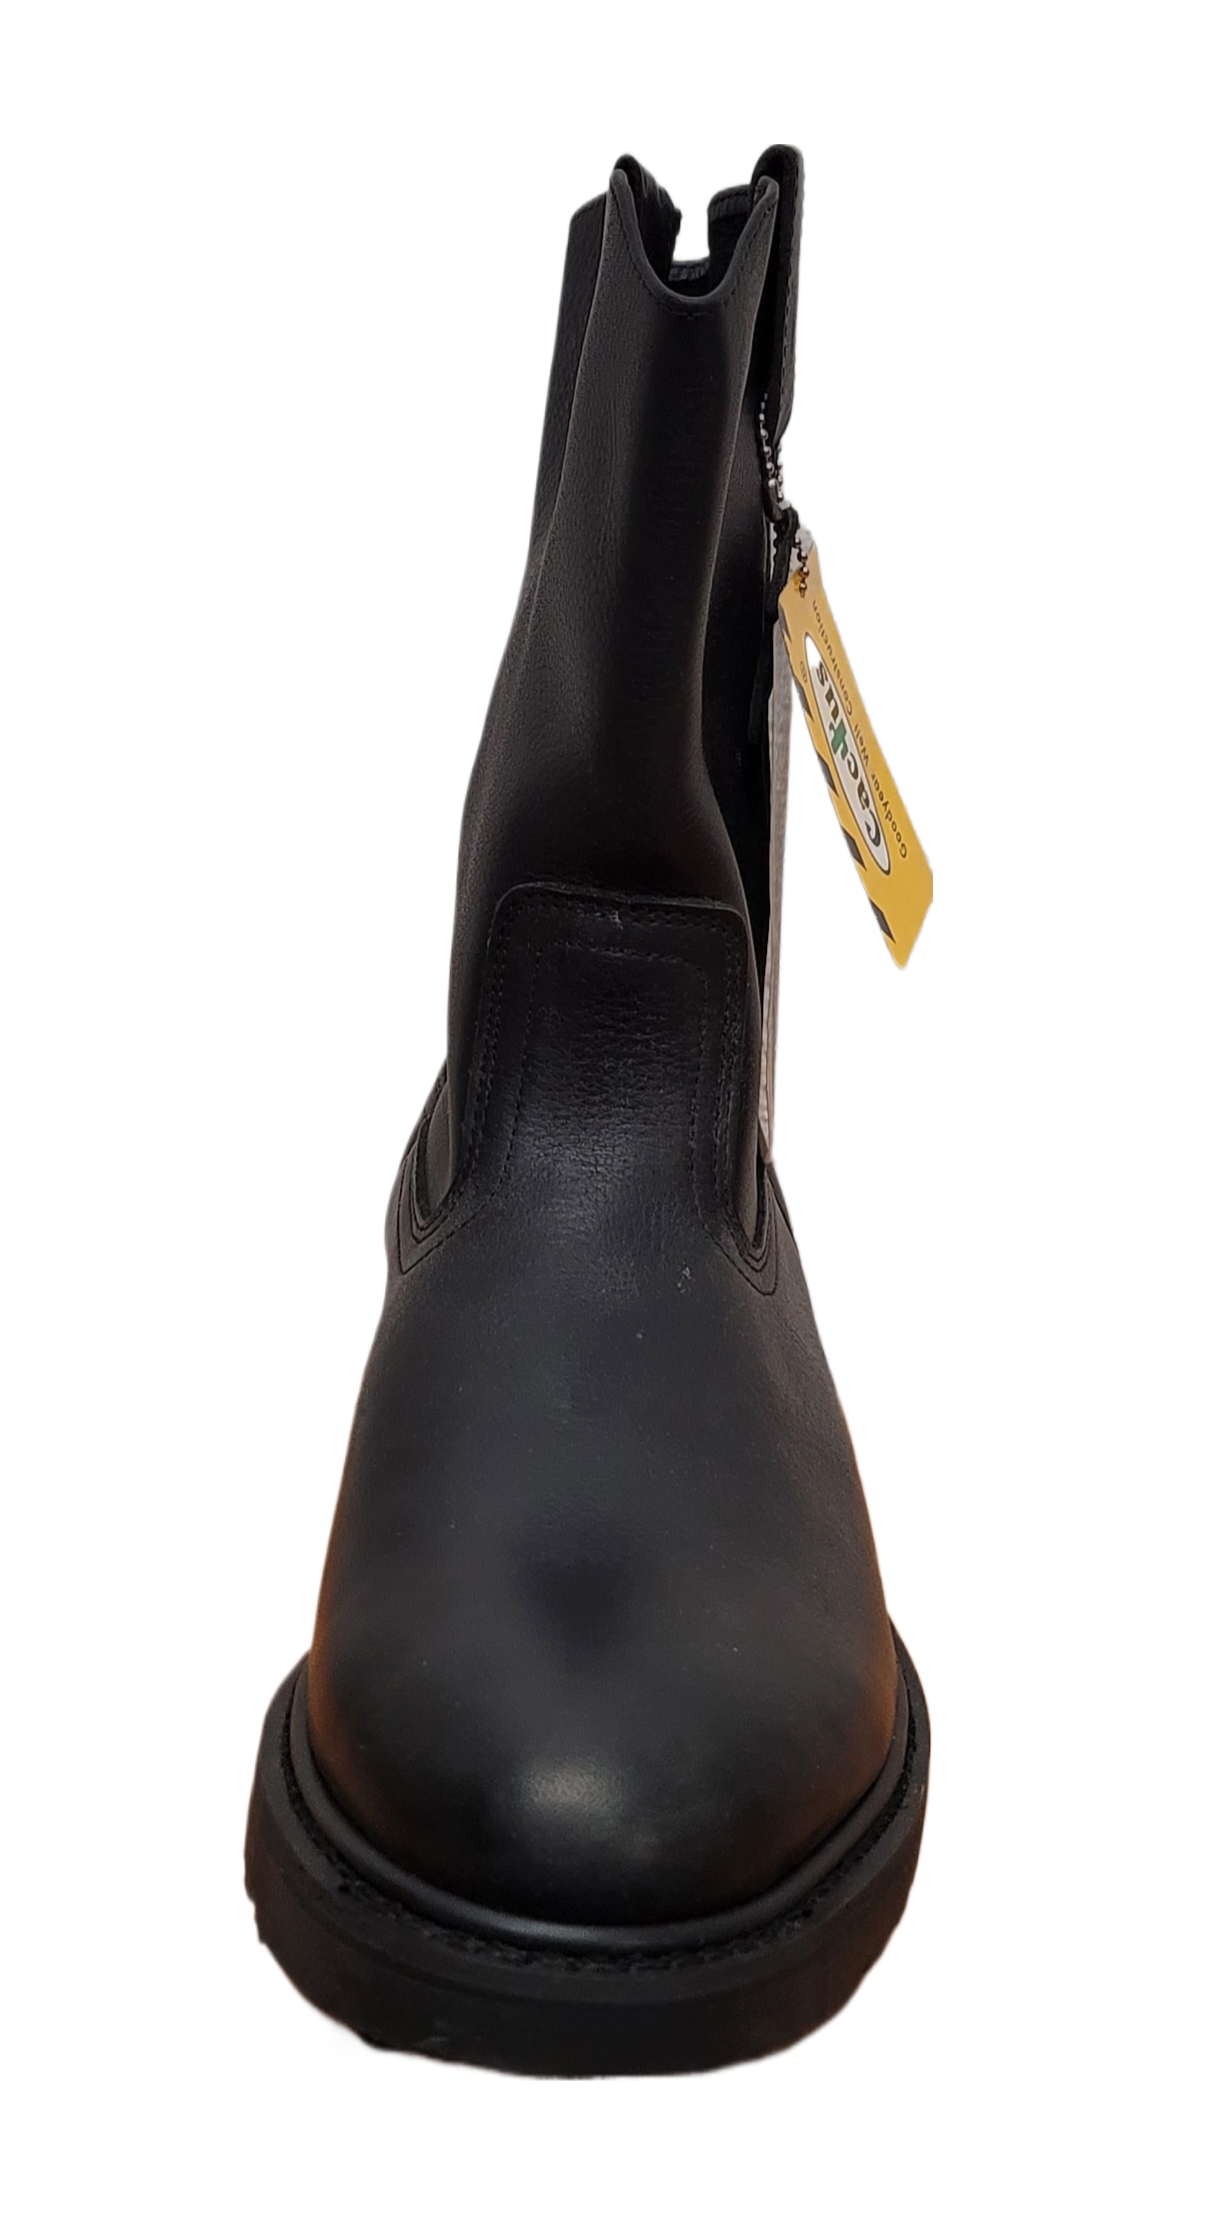 Cactus Men Oil & Slip Resistant Pull-On Work Boot Black 1033-BLK